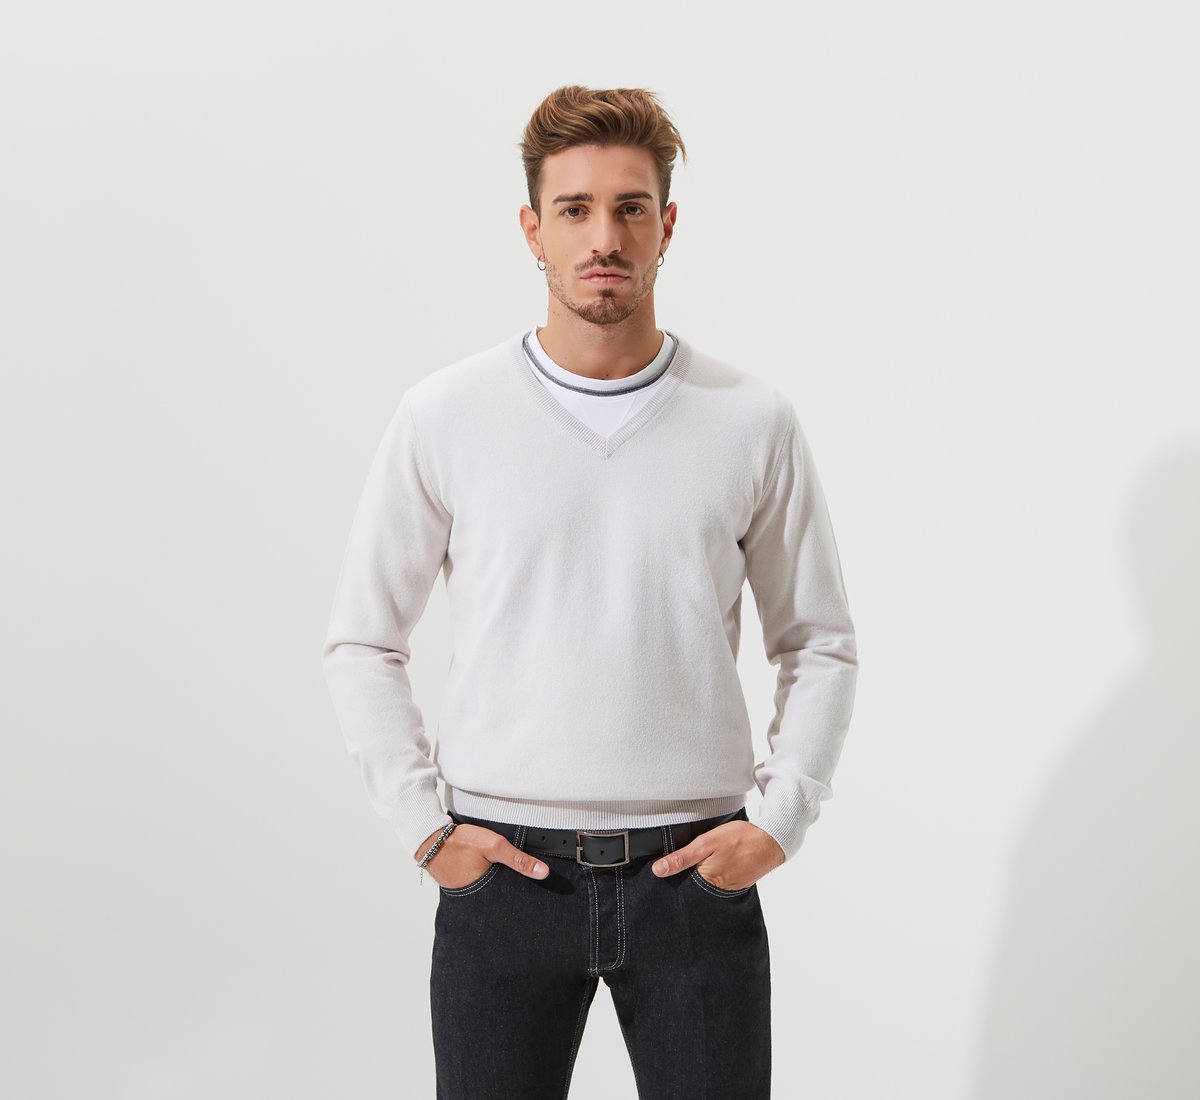 White V-neck sweater